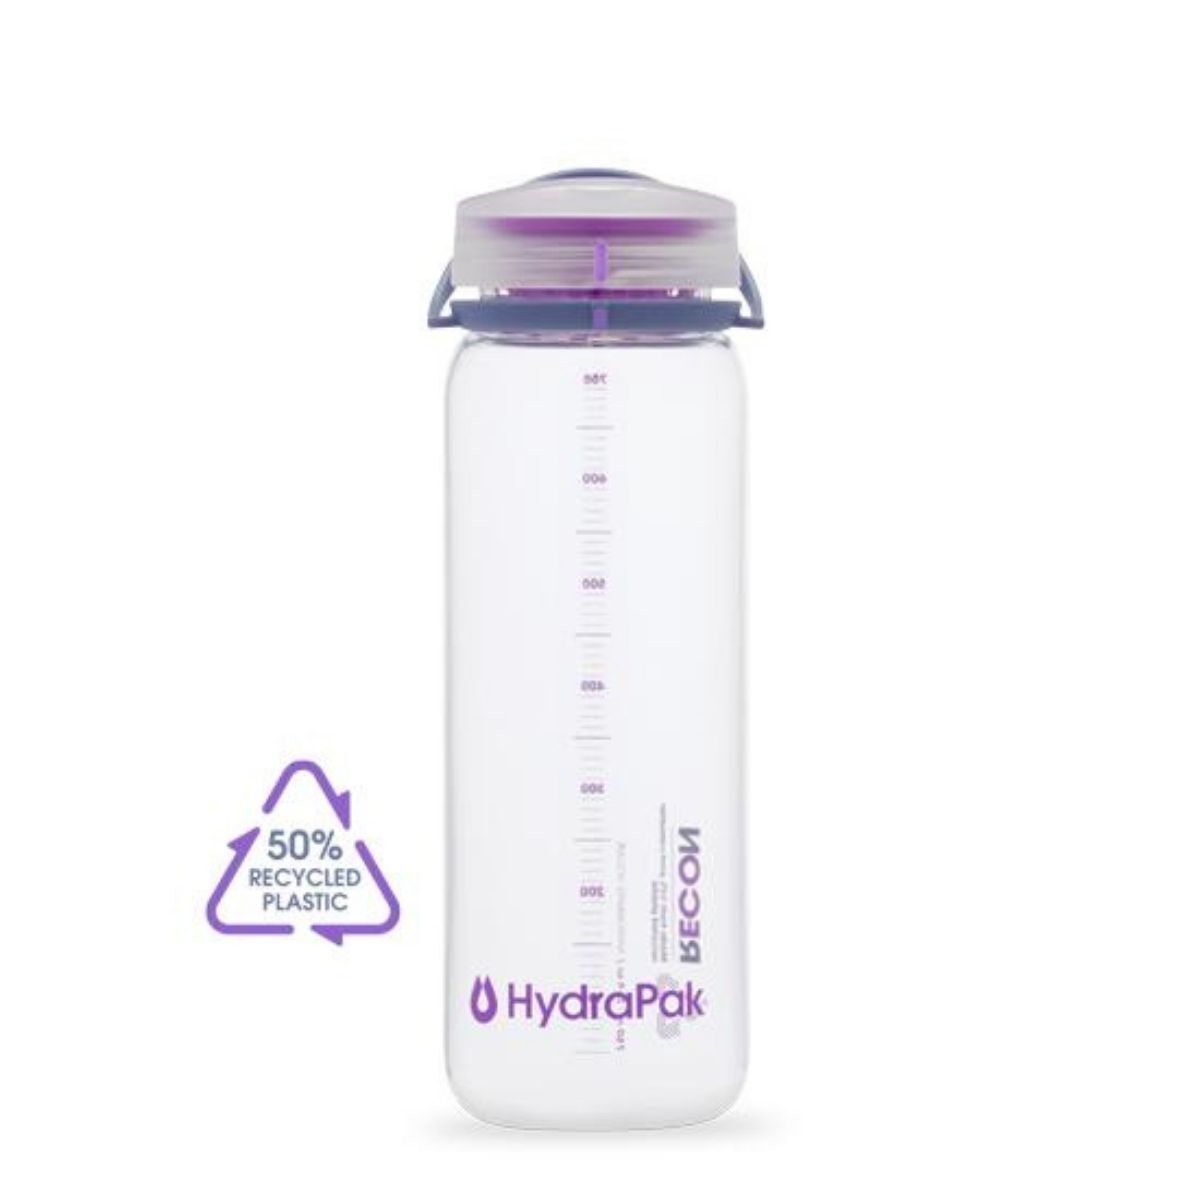 Hydrapak Recon - Water bottle